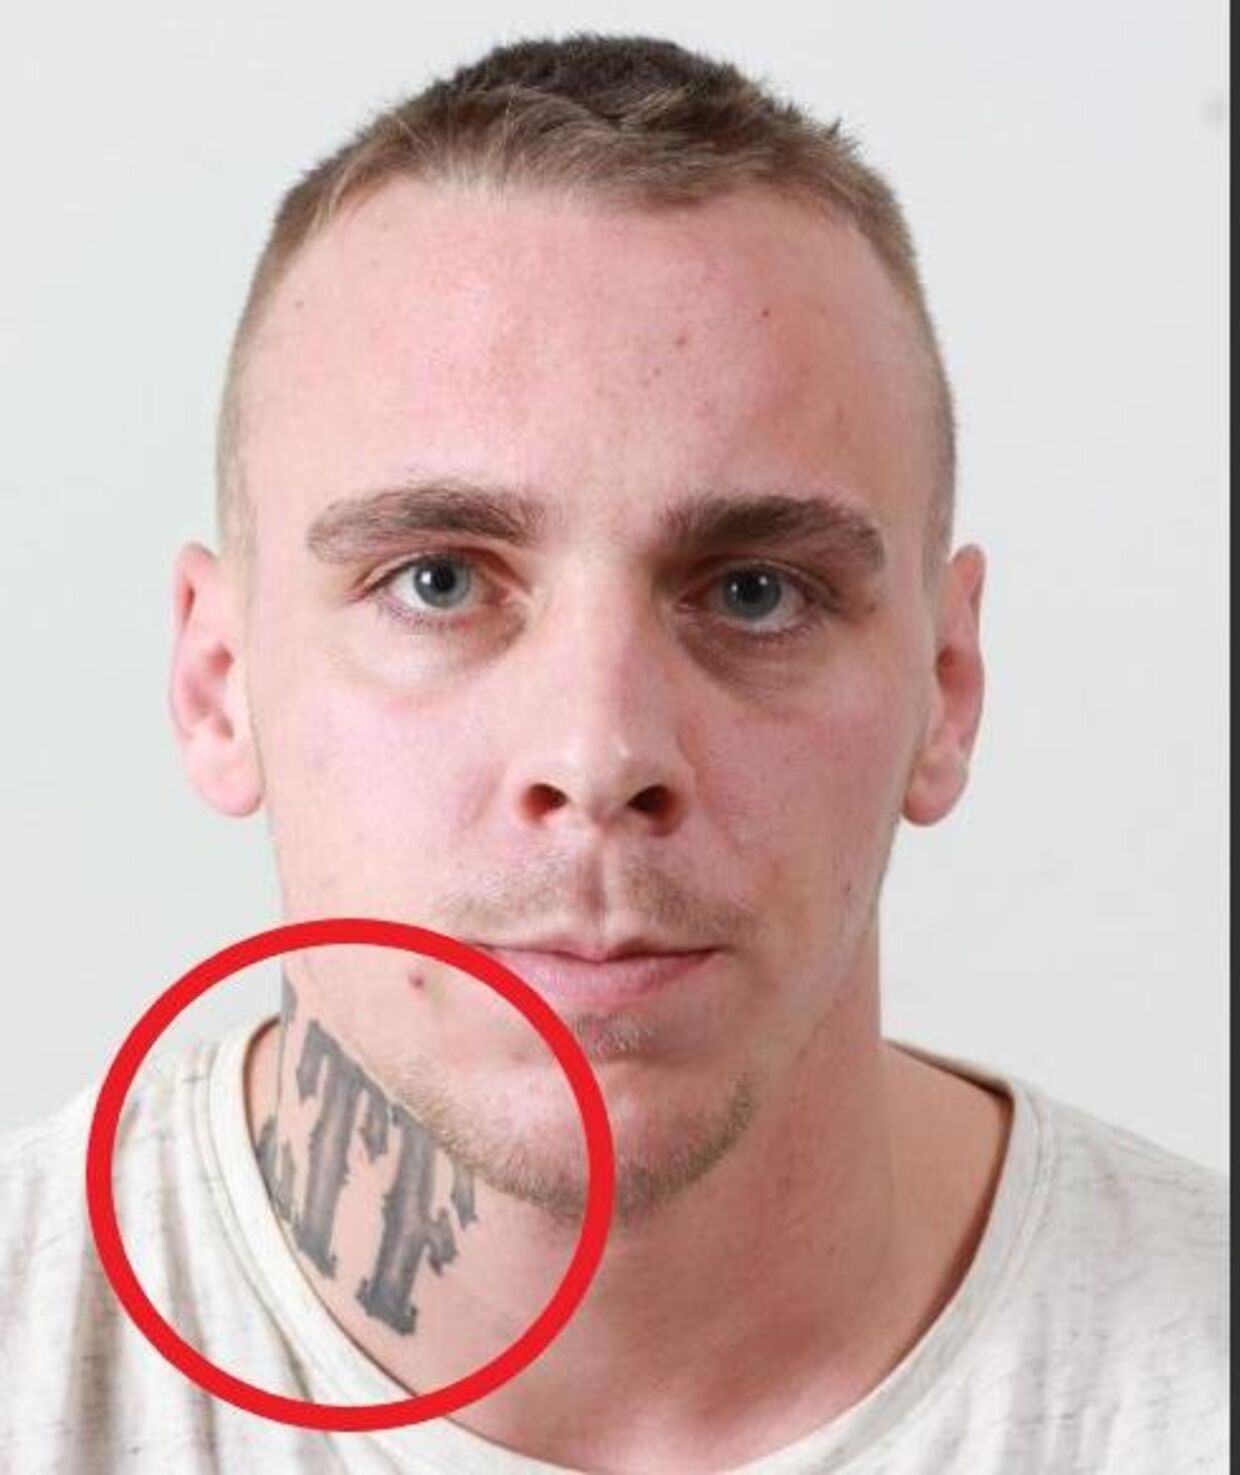 Stefan Tahir Gaarboe Danielsen har bogstaverne 'LTF' tatoveret på halsen.